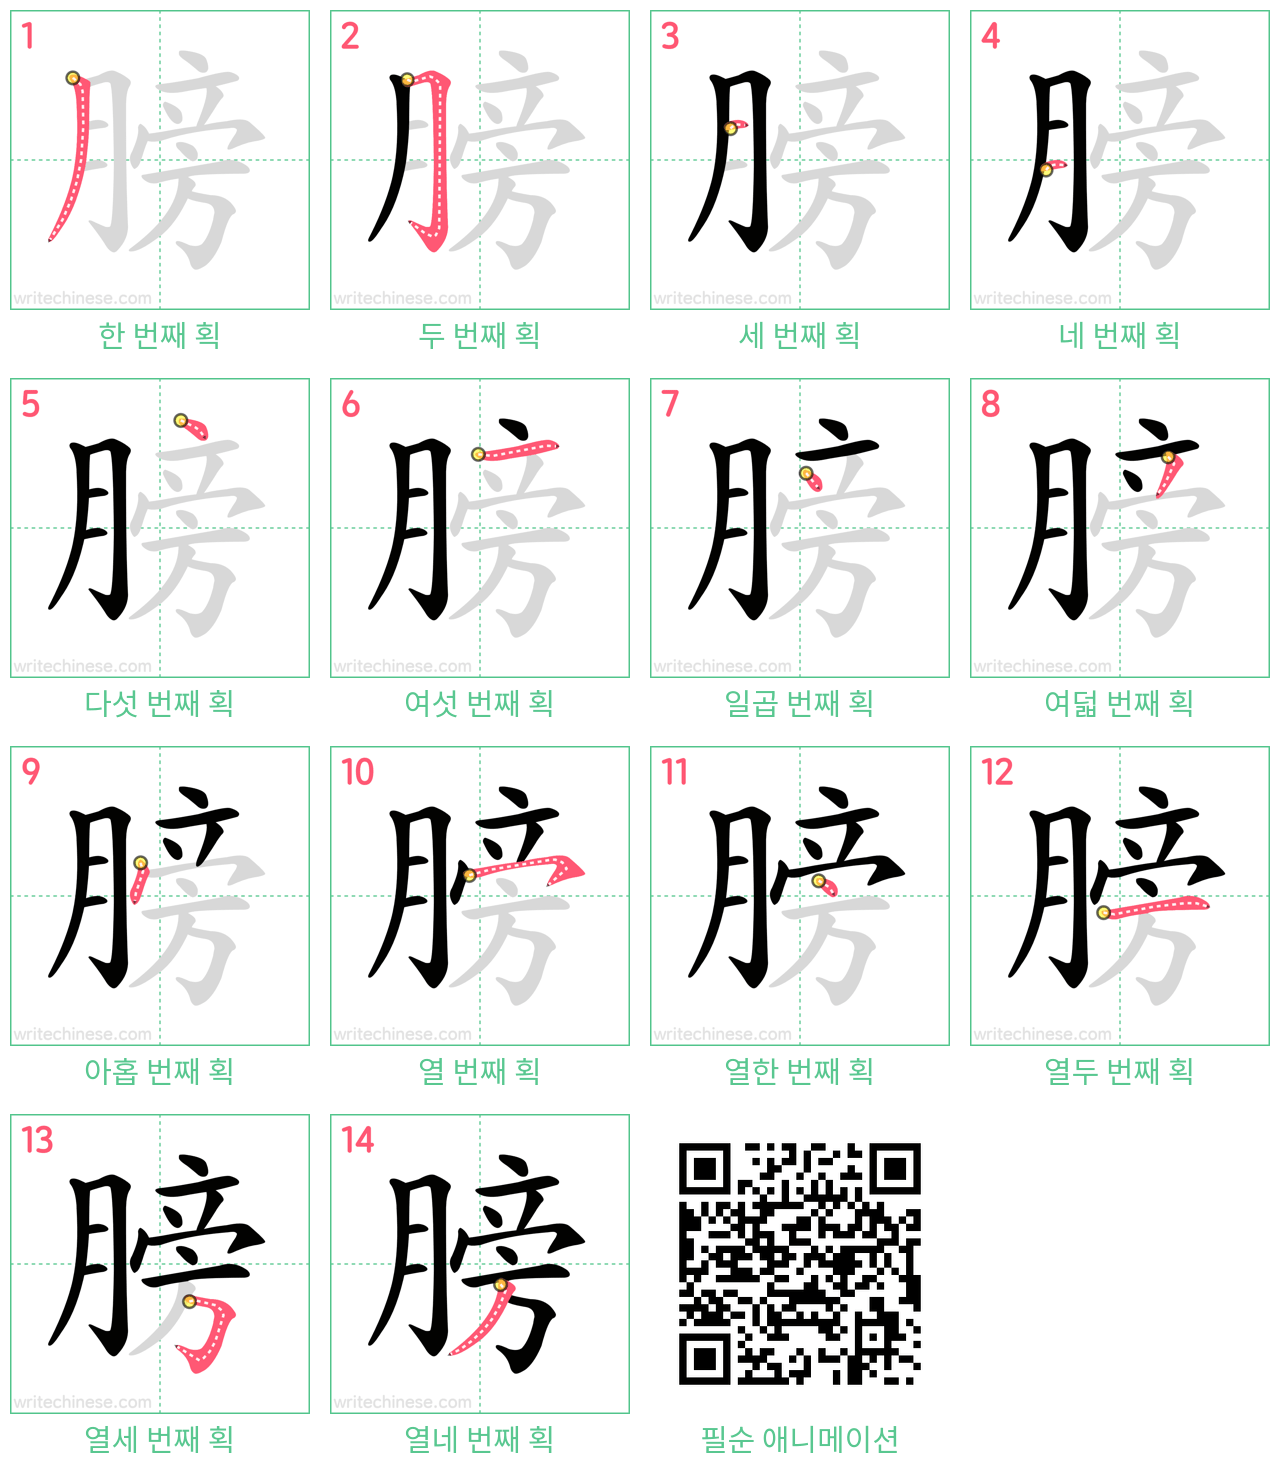 膀 step-by-step stroke order diagrams